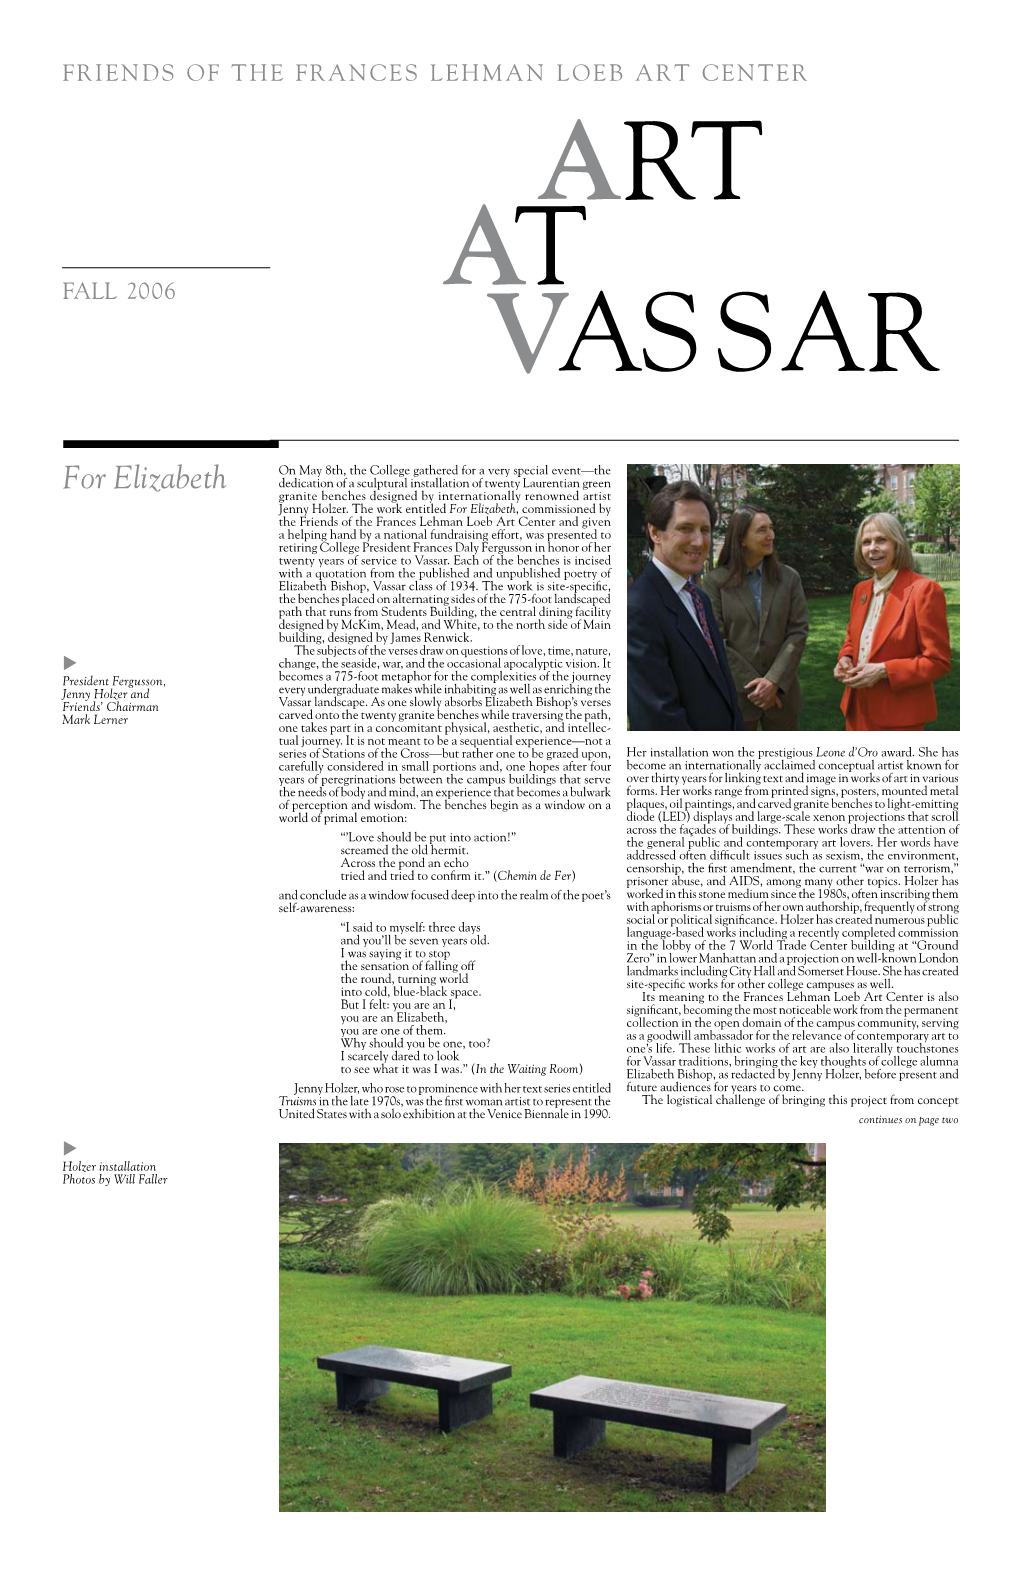 Fall 2006 at VASSAR